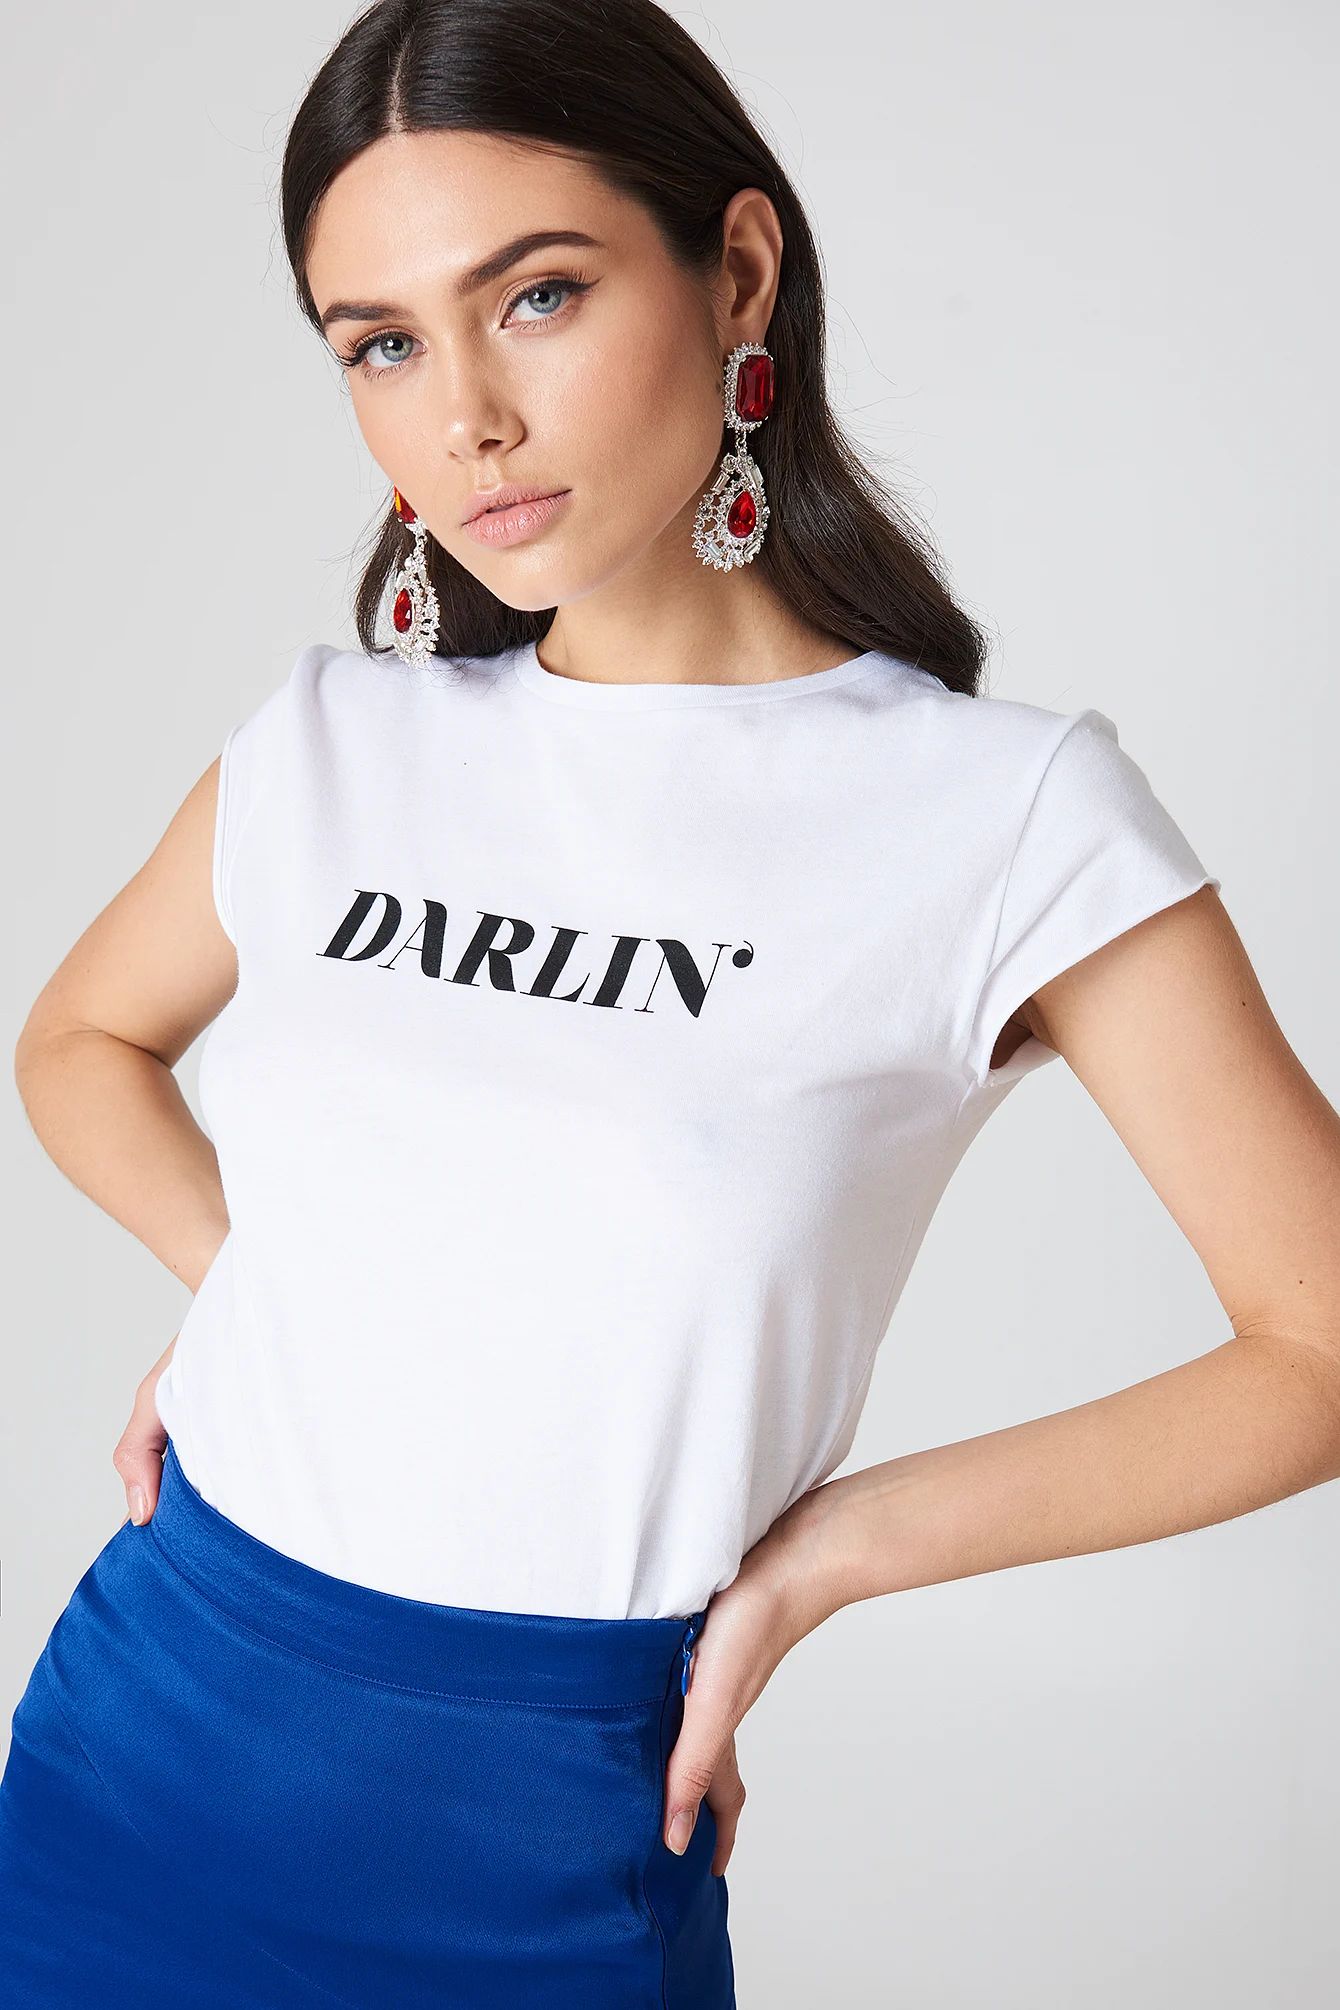 Darlin' Tee | NA-KD Global